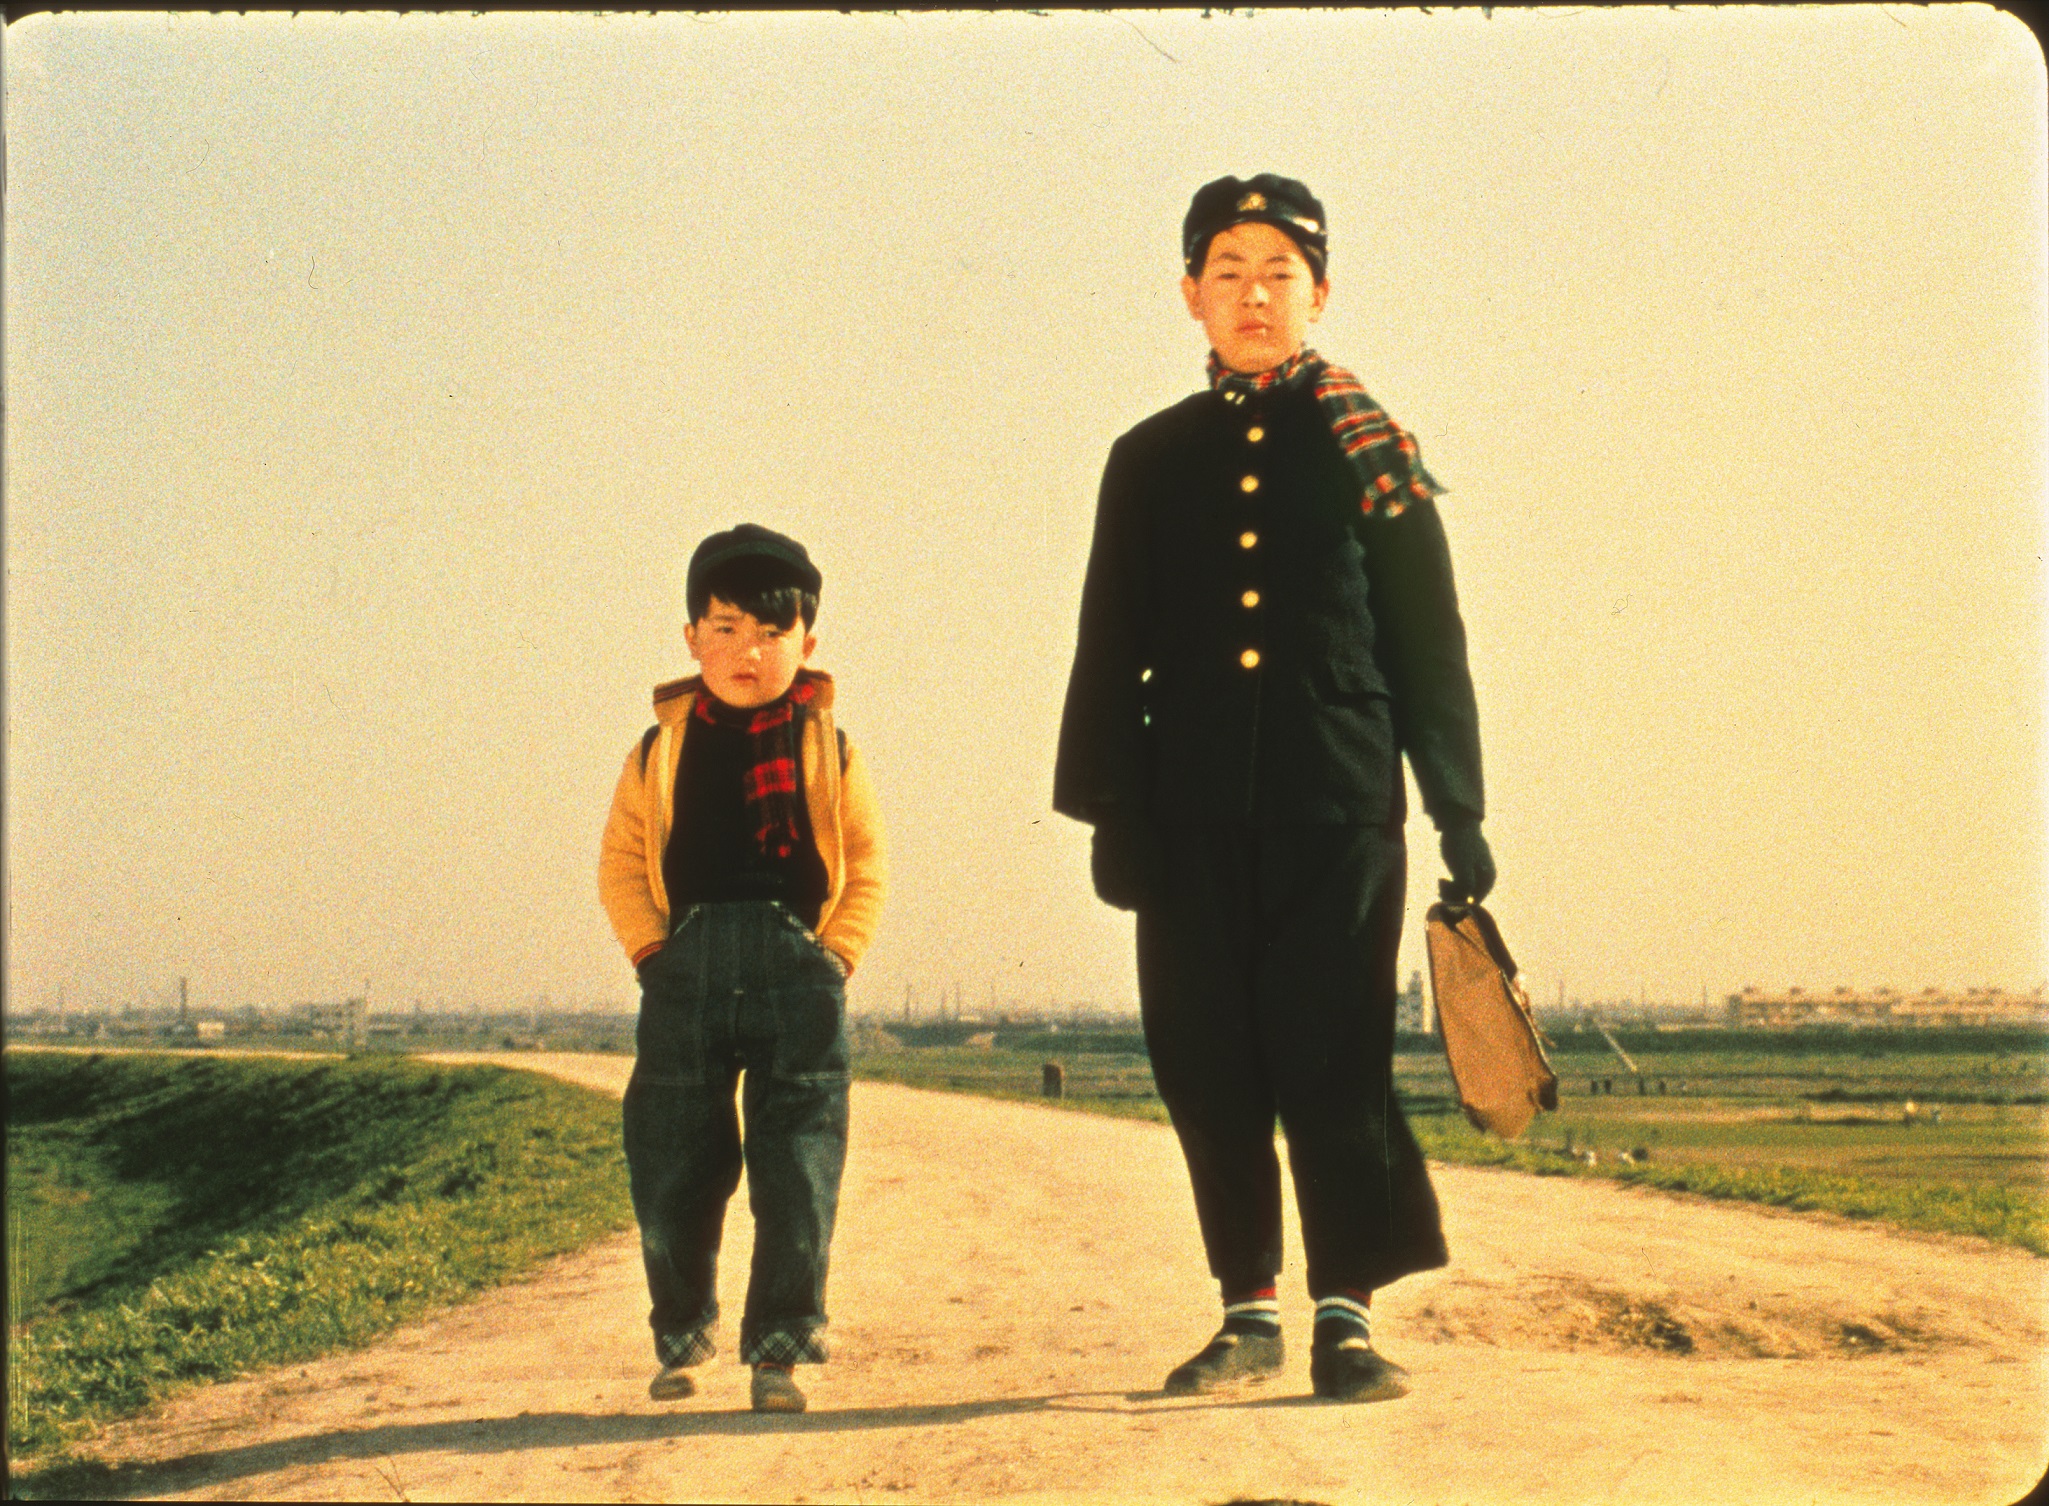 Fuori Orario Cose (mai) Viste presenta, in versione restaurata, 11 film di Yasujirō Ozu